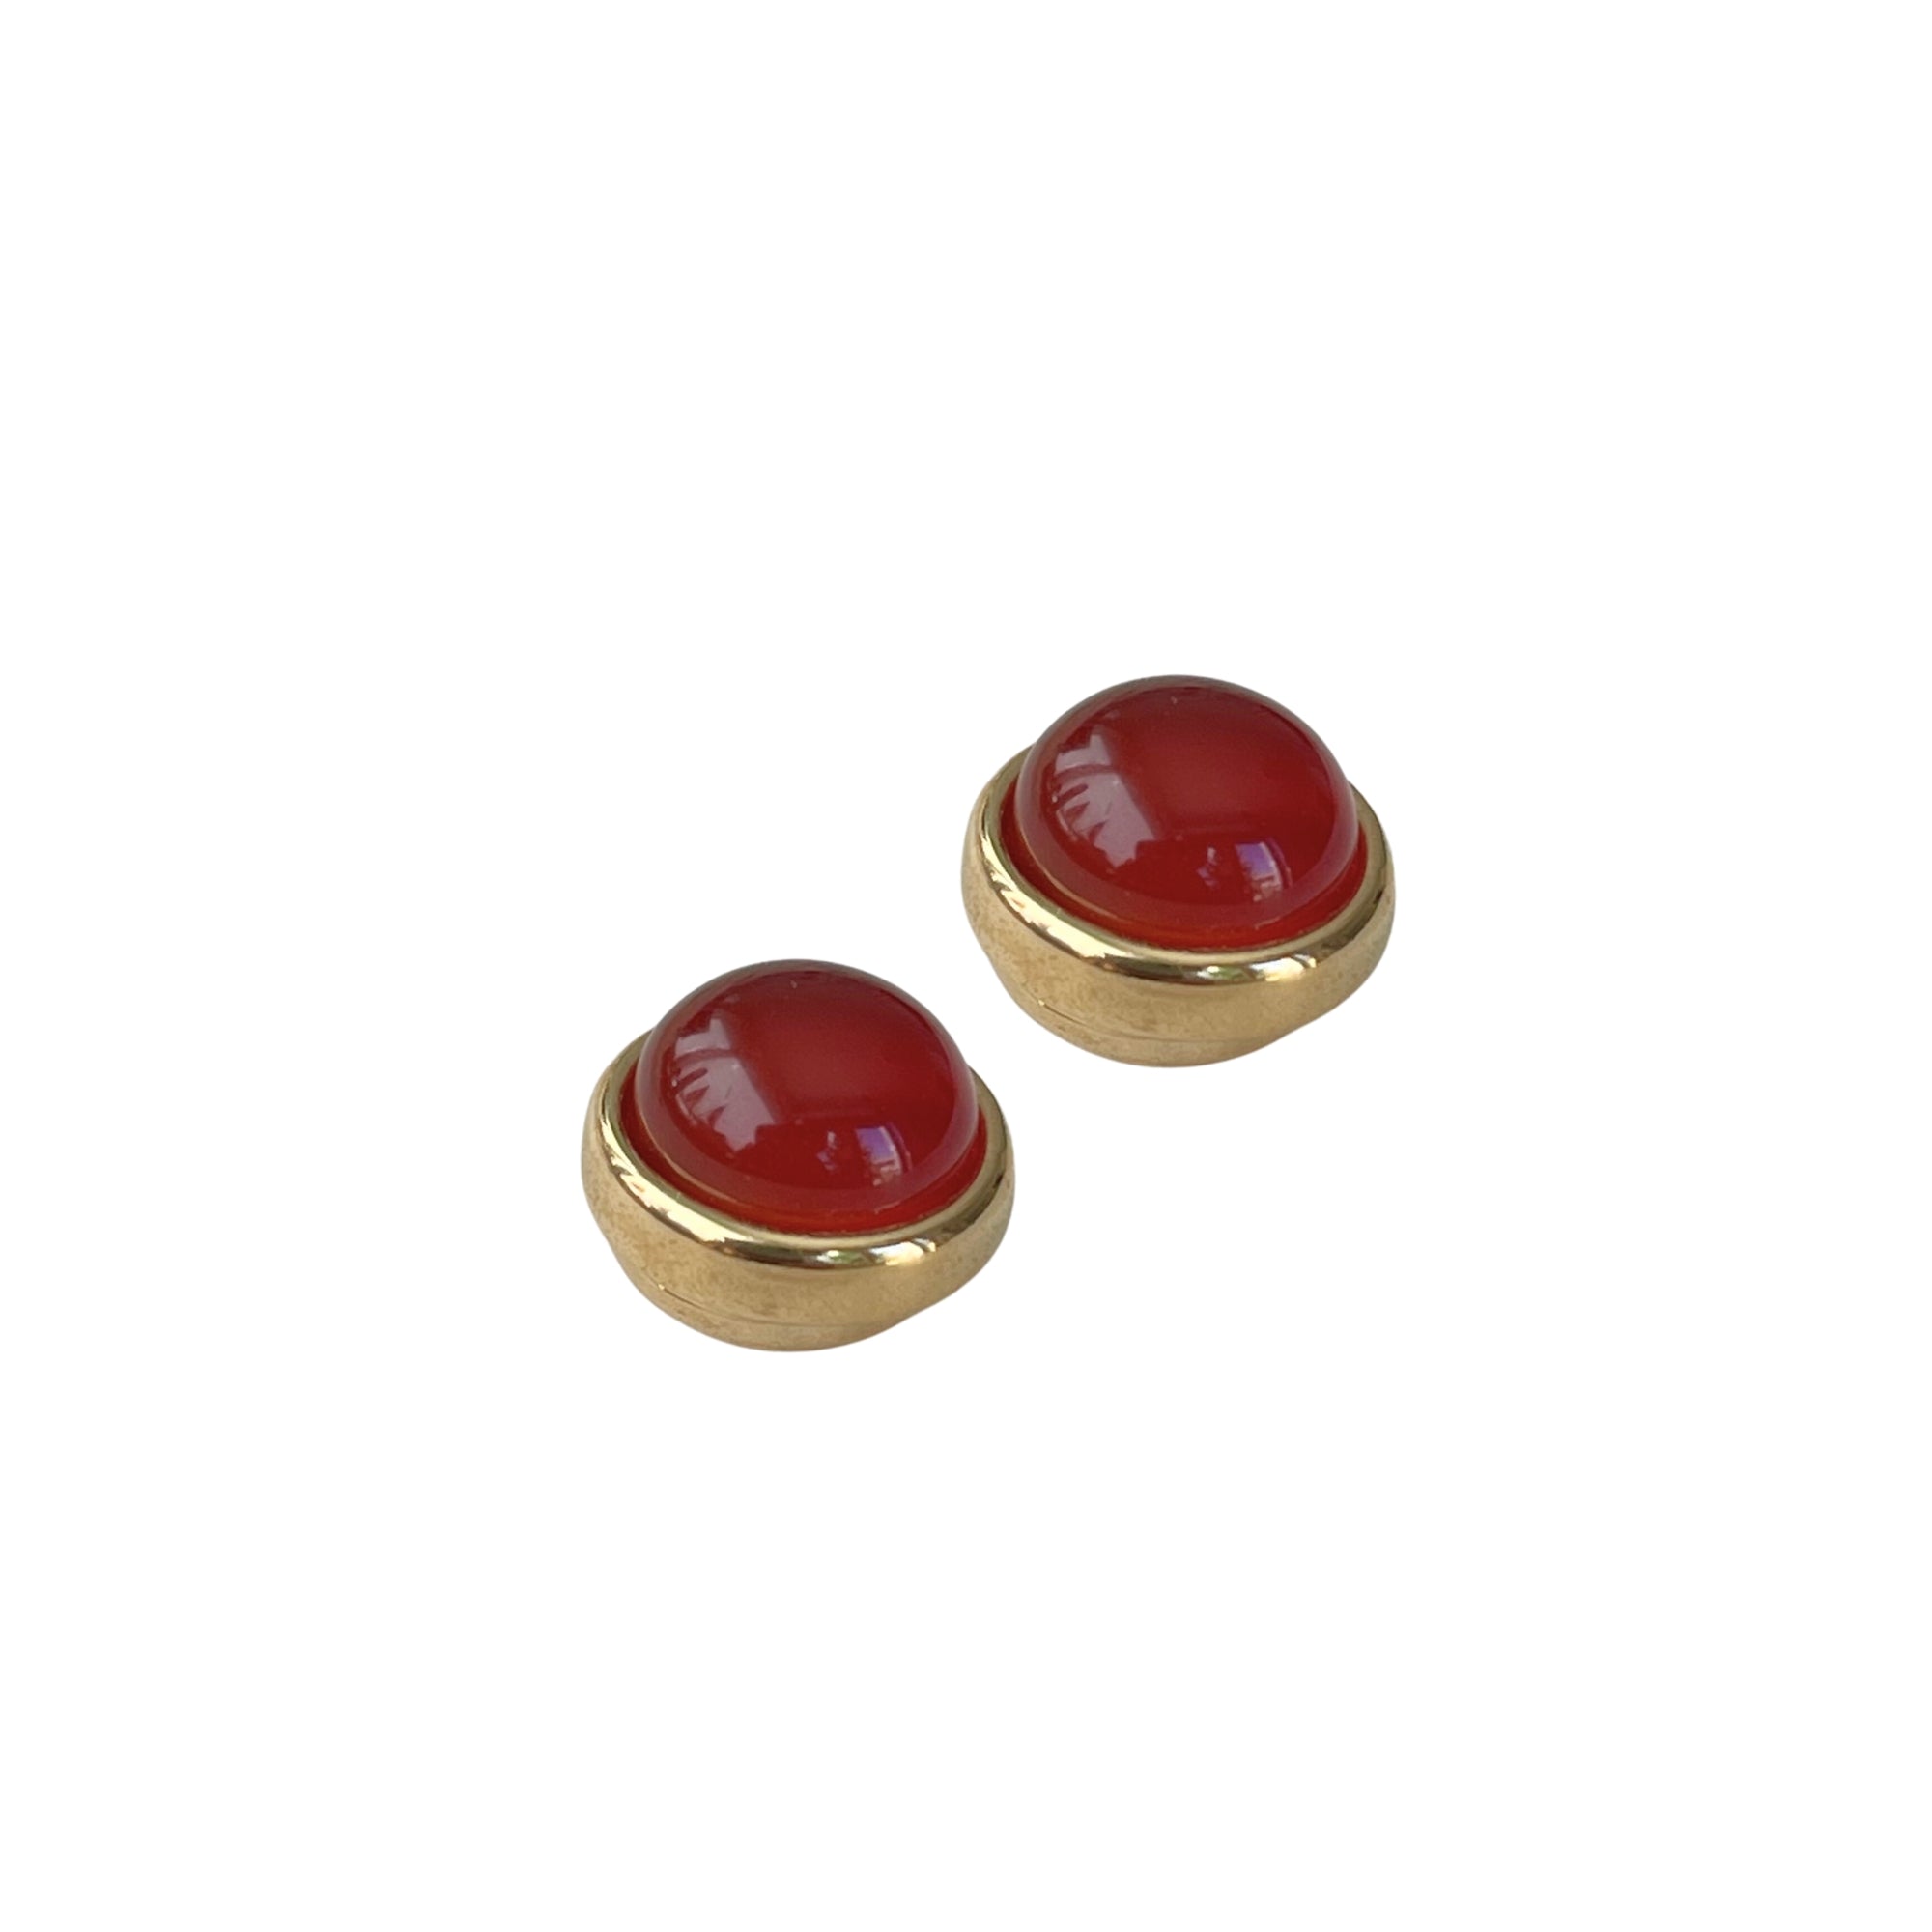 Magnetische 'ESTHER' Ohrringe: Vergoldet mit Rotbraunem Achat Durchmesser: 1,2 cm Magnetverschluss, kein Ohrloch nötig. Hochwertige, praktische Ohrringe für jedes Outfit